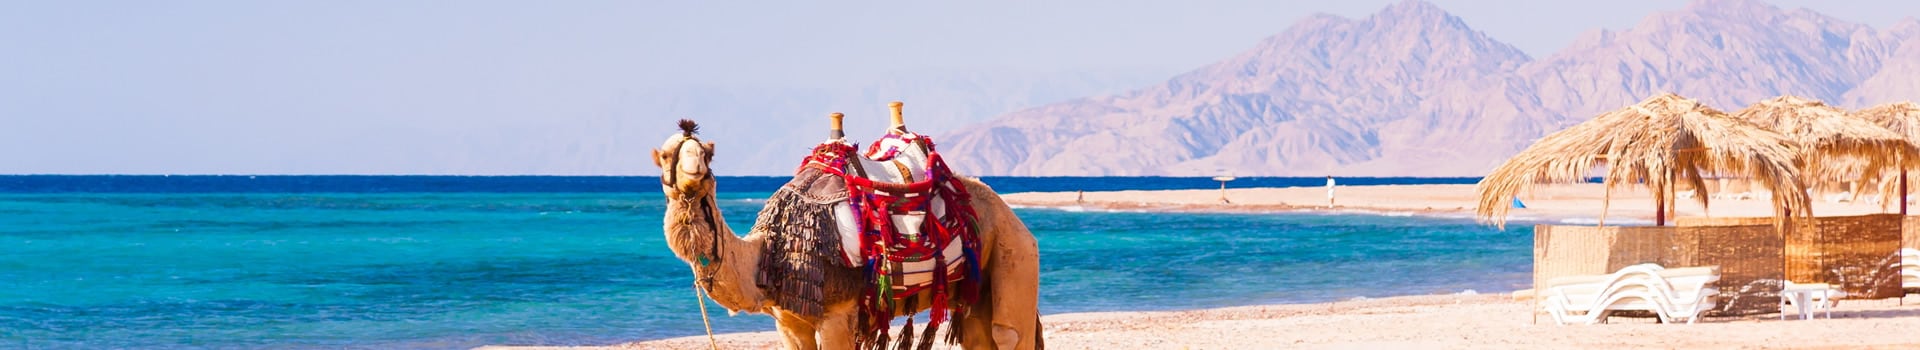 Ferihegy - Hurghada